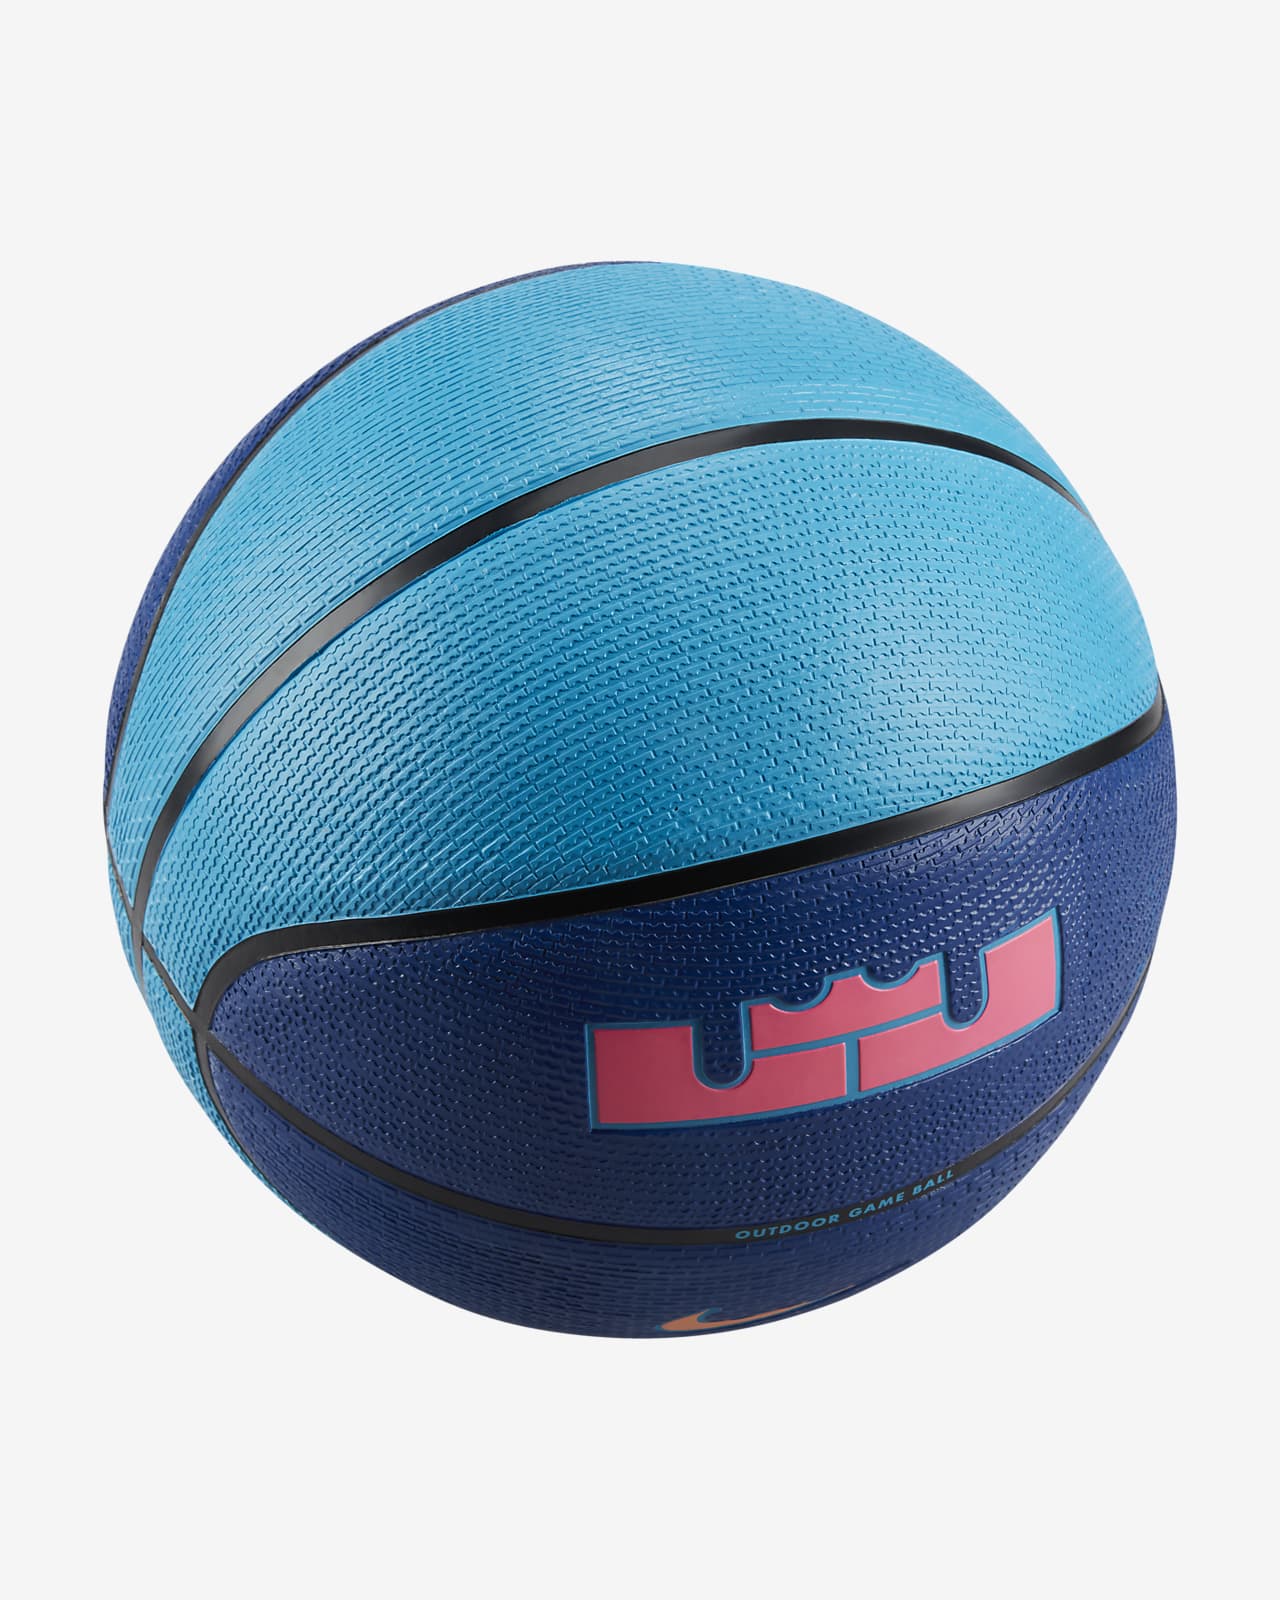 LeBron Playground 8P Basketball (Deflated)